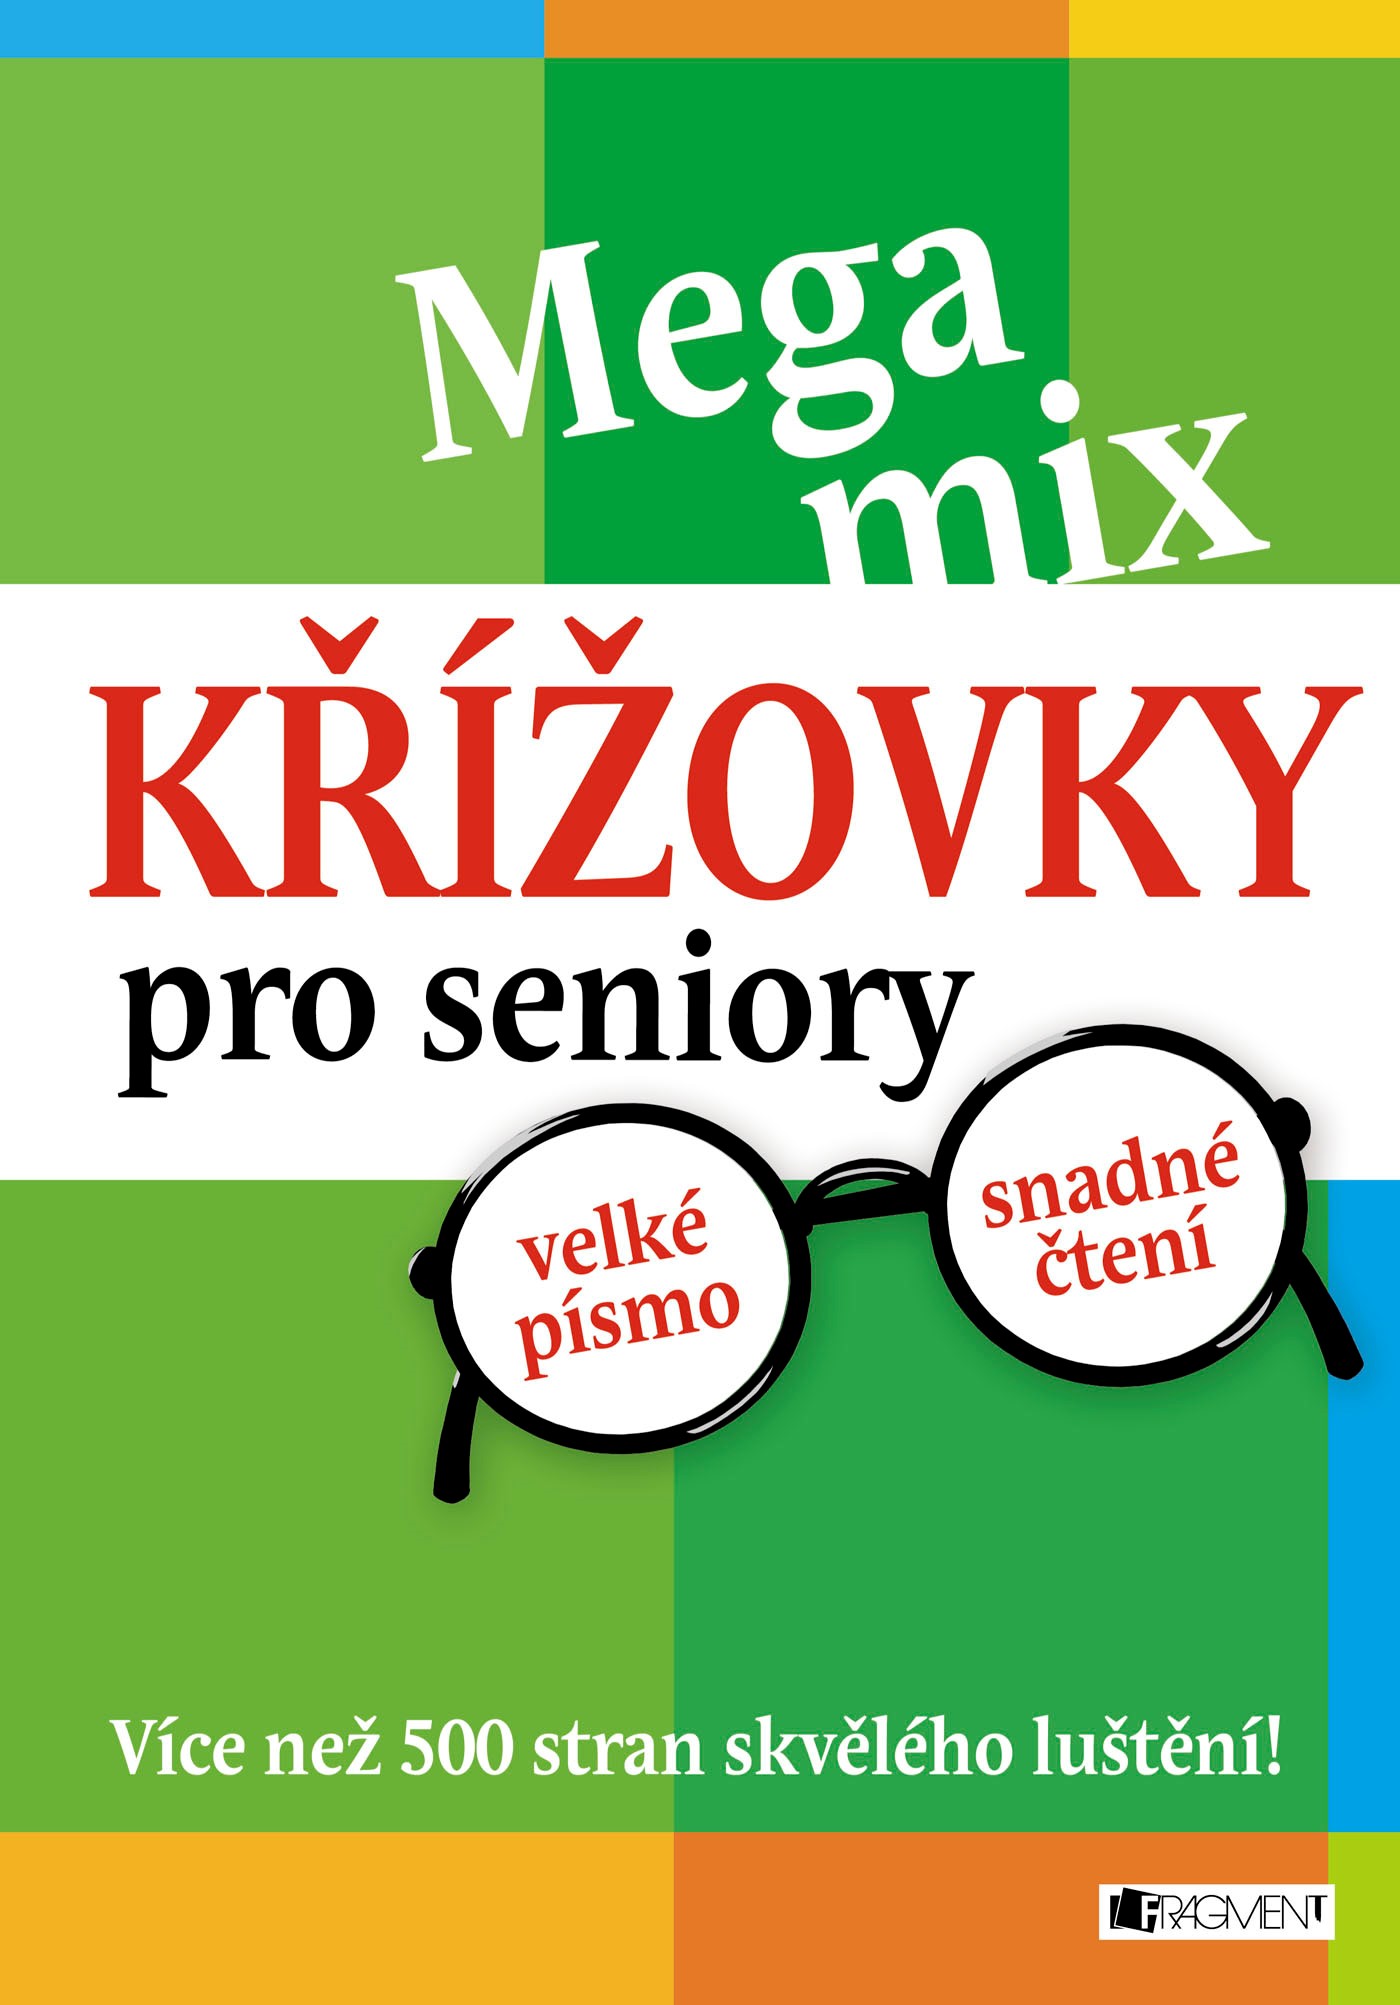 Mega mix - Křížovky pro seniory